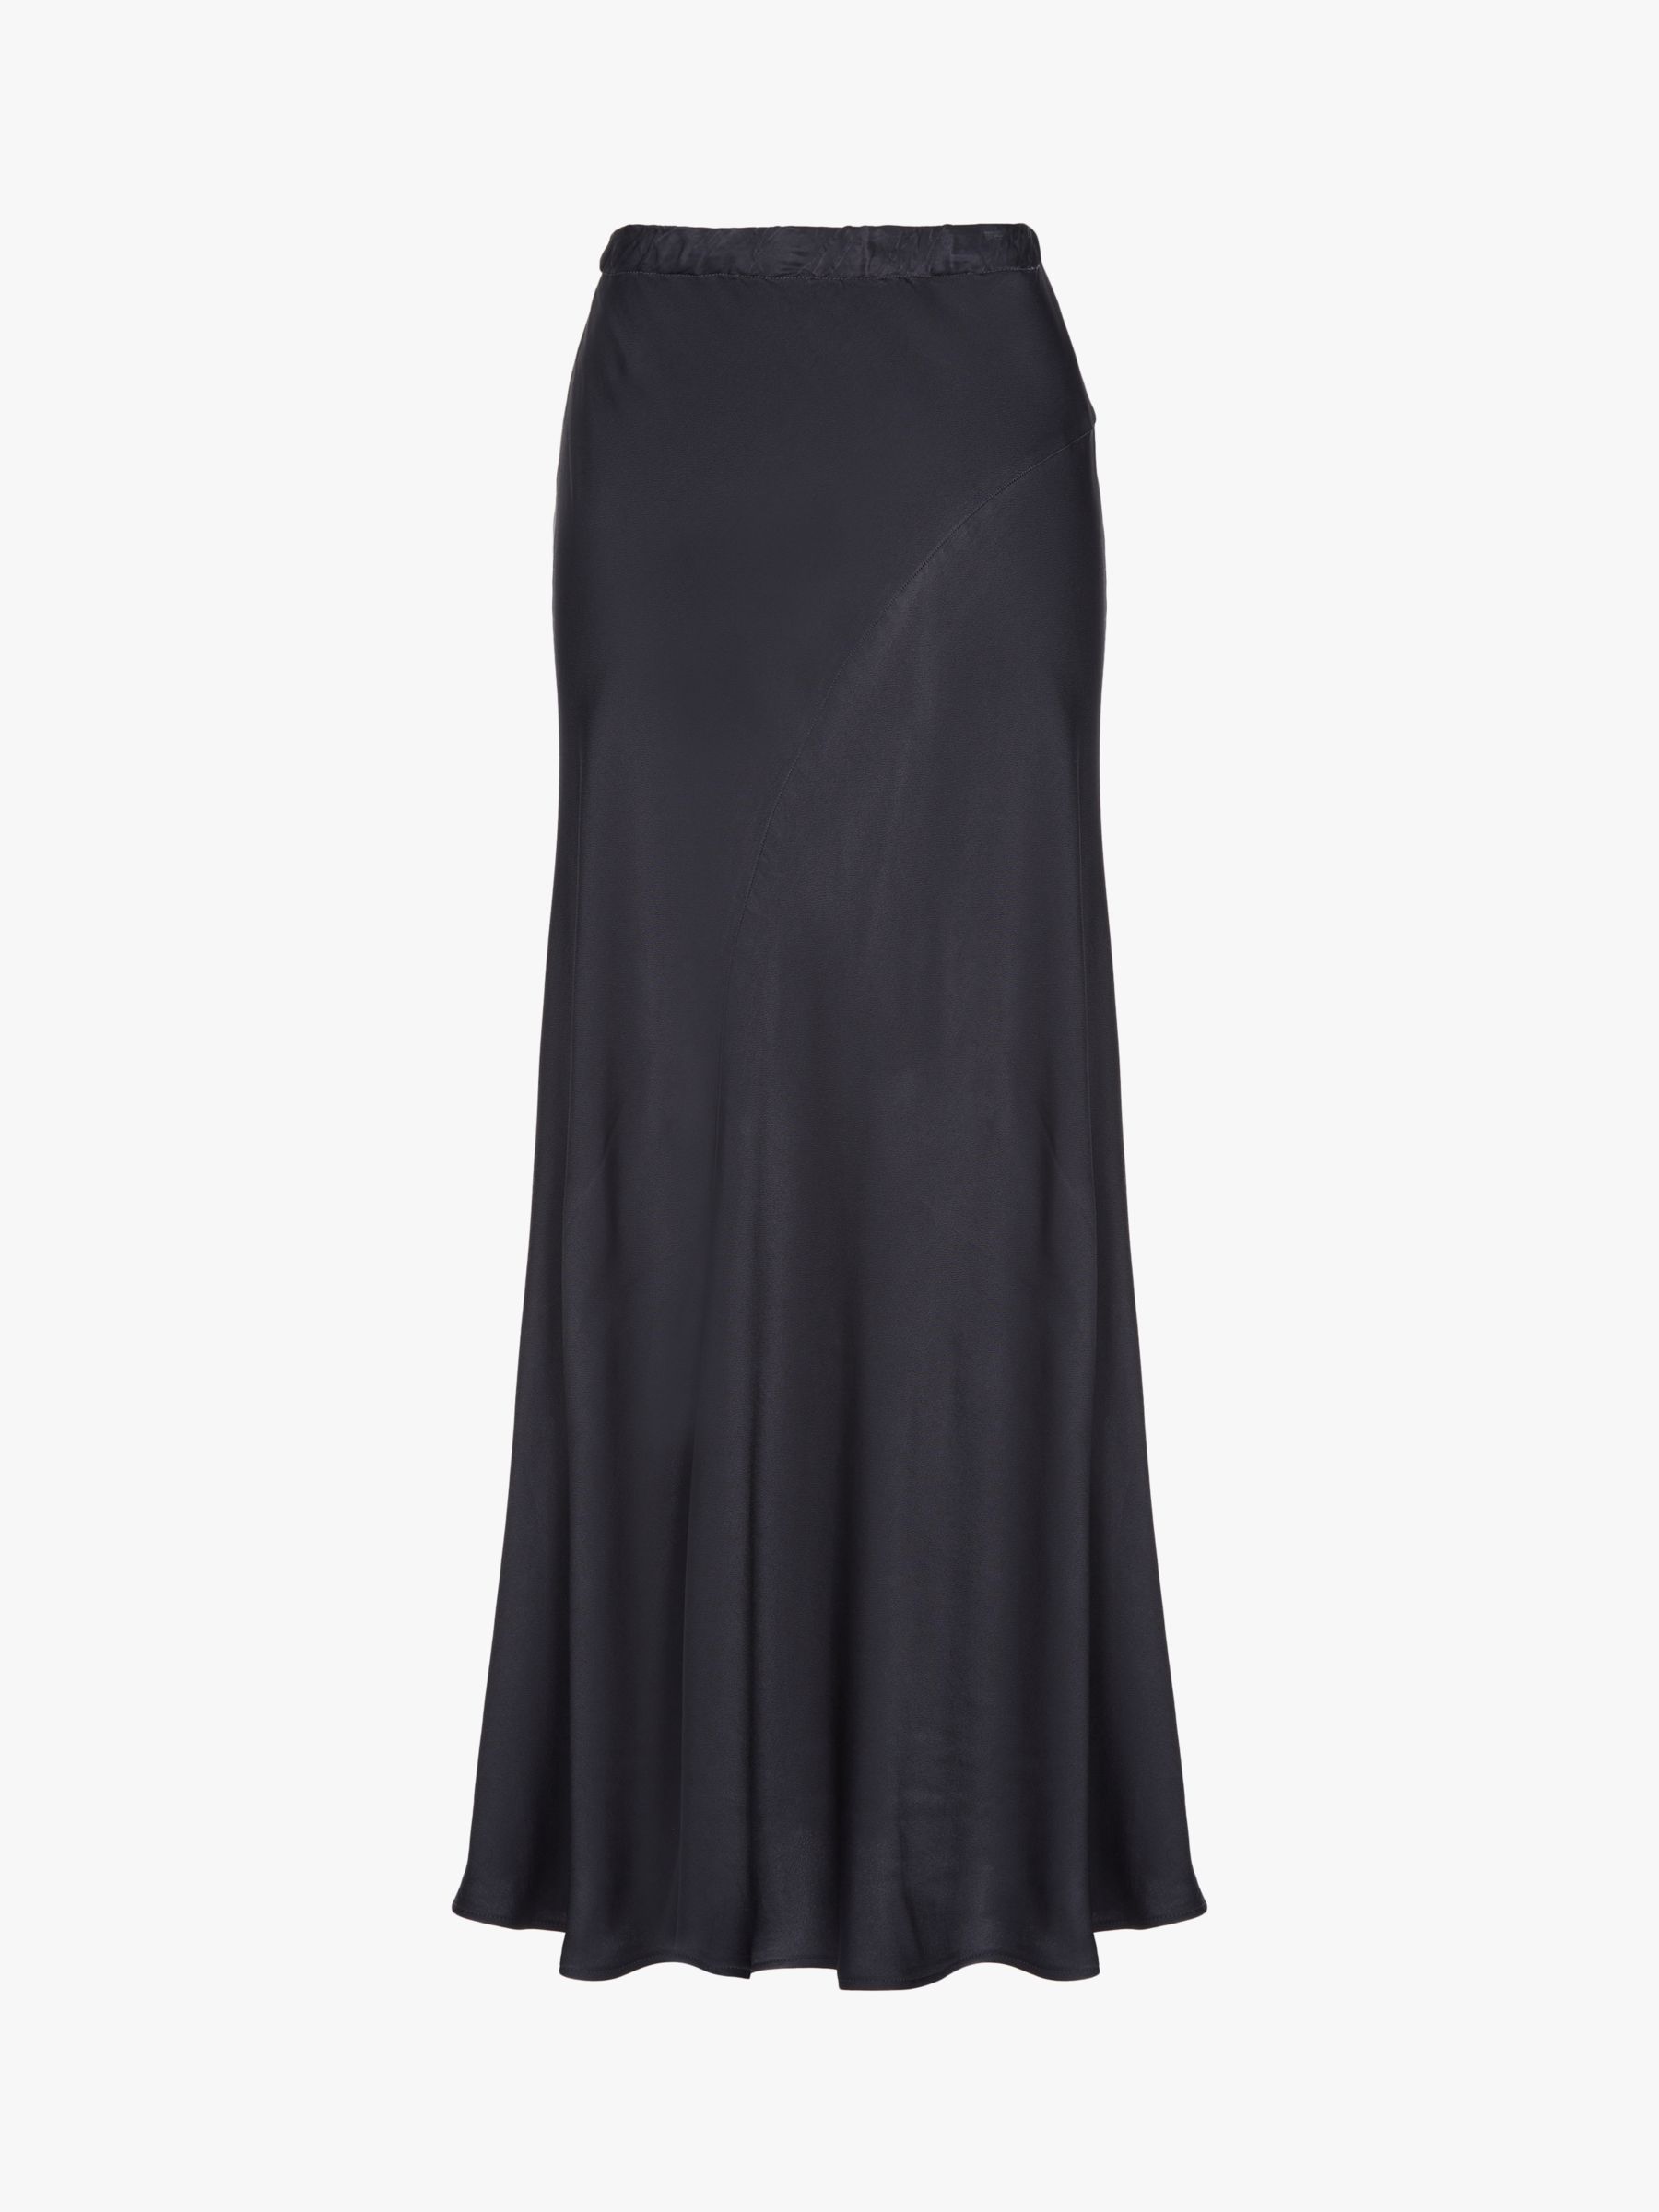 Ghost Caro Slip Skirt, Charcoal, L